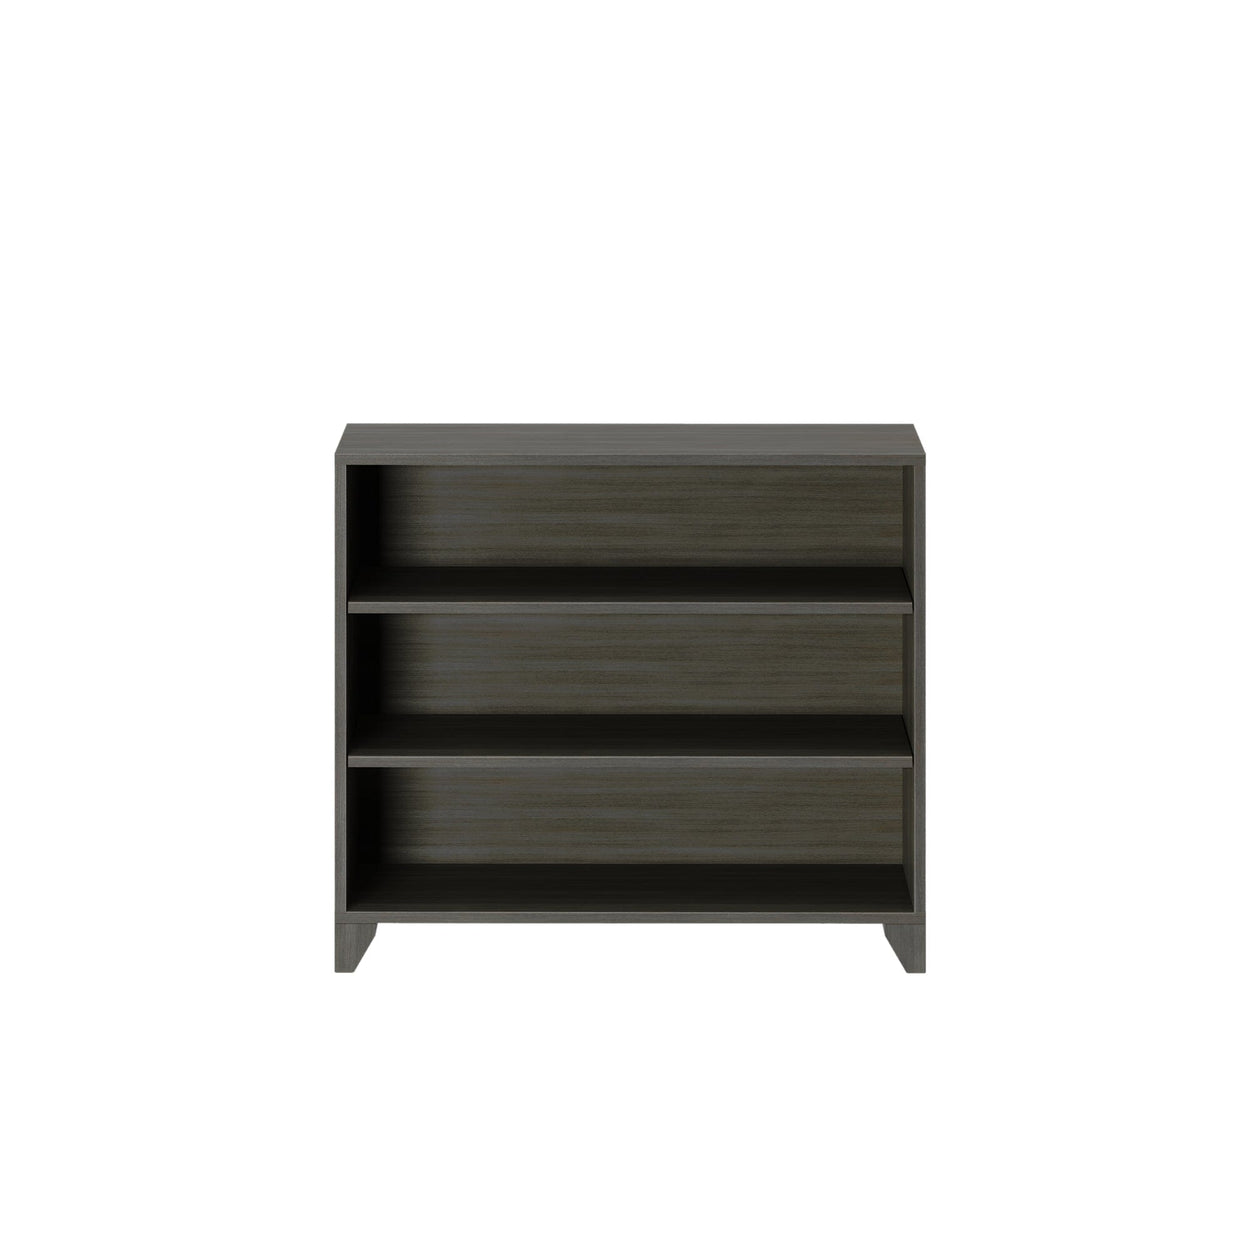 184720-151 : Furniture Classic 3-Shelf Bookcase, Clay